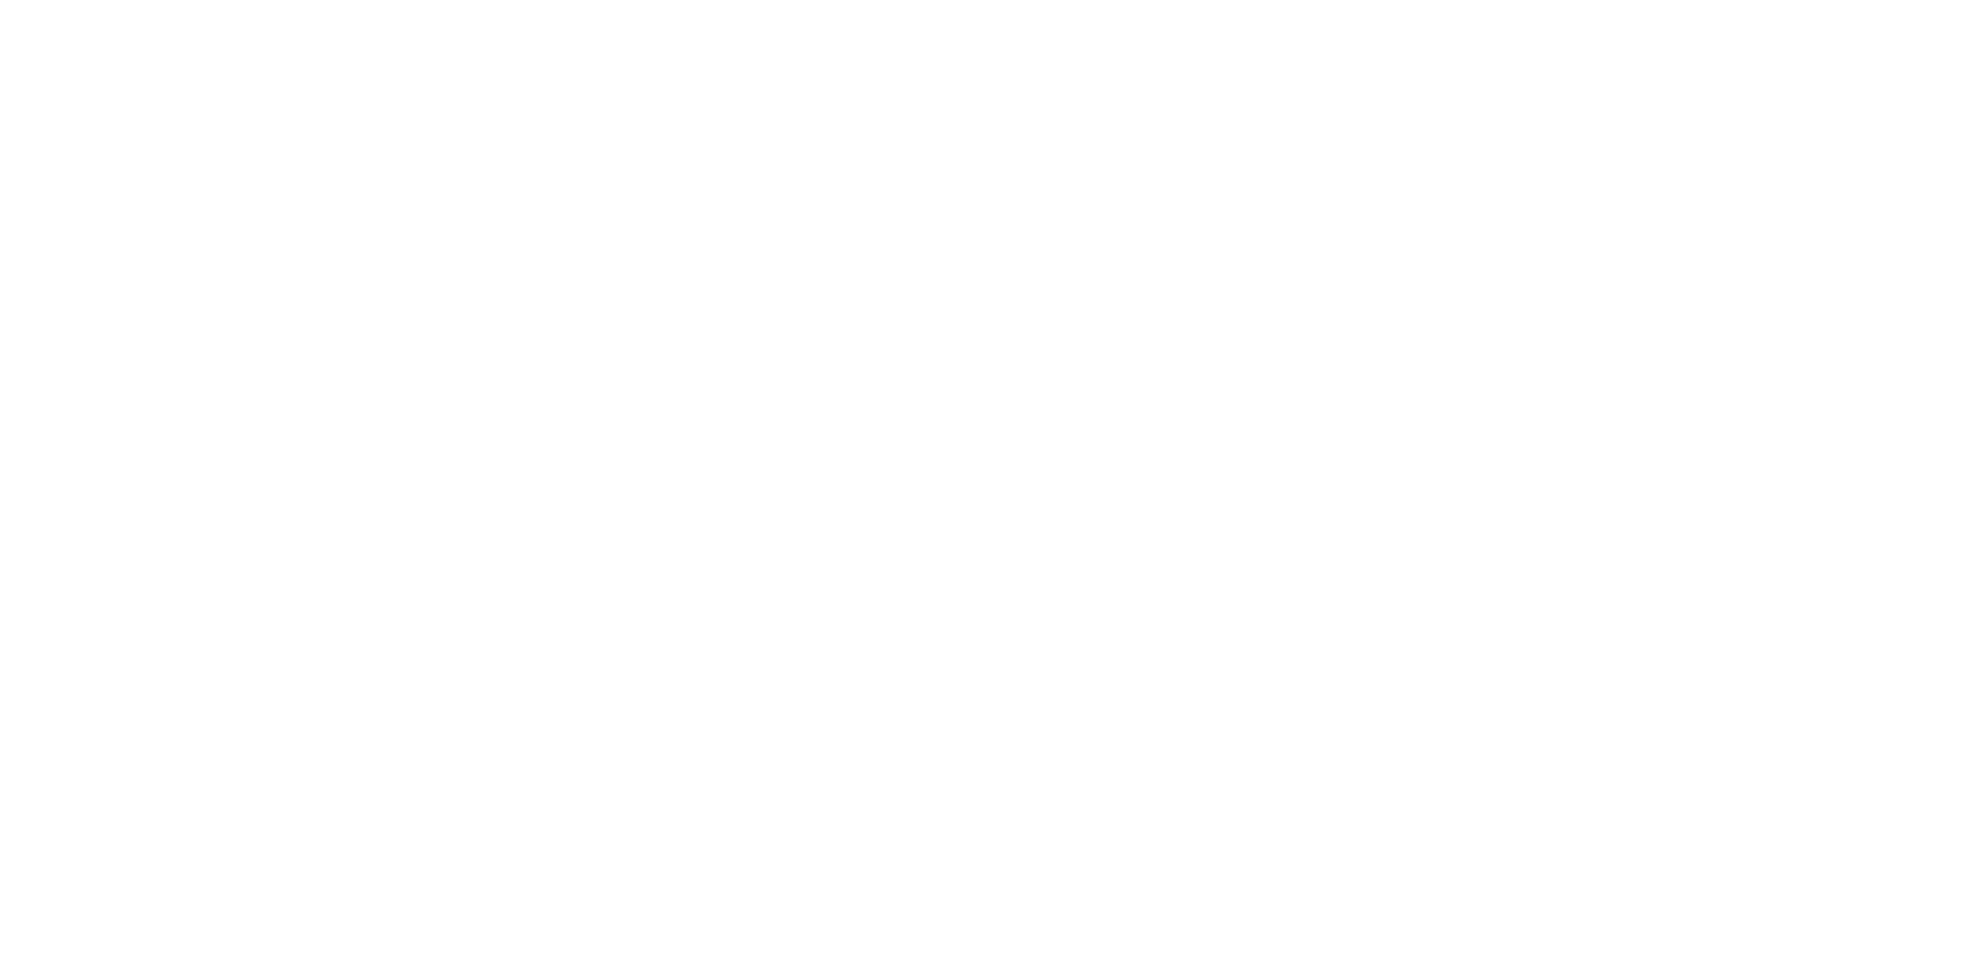 NetSfere